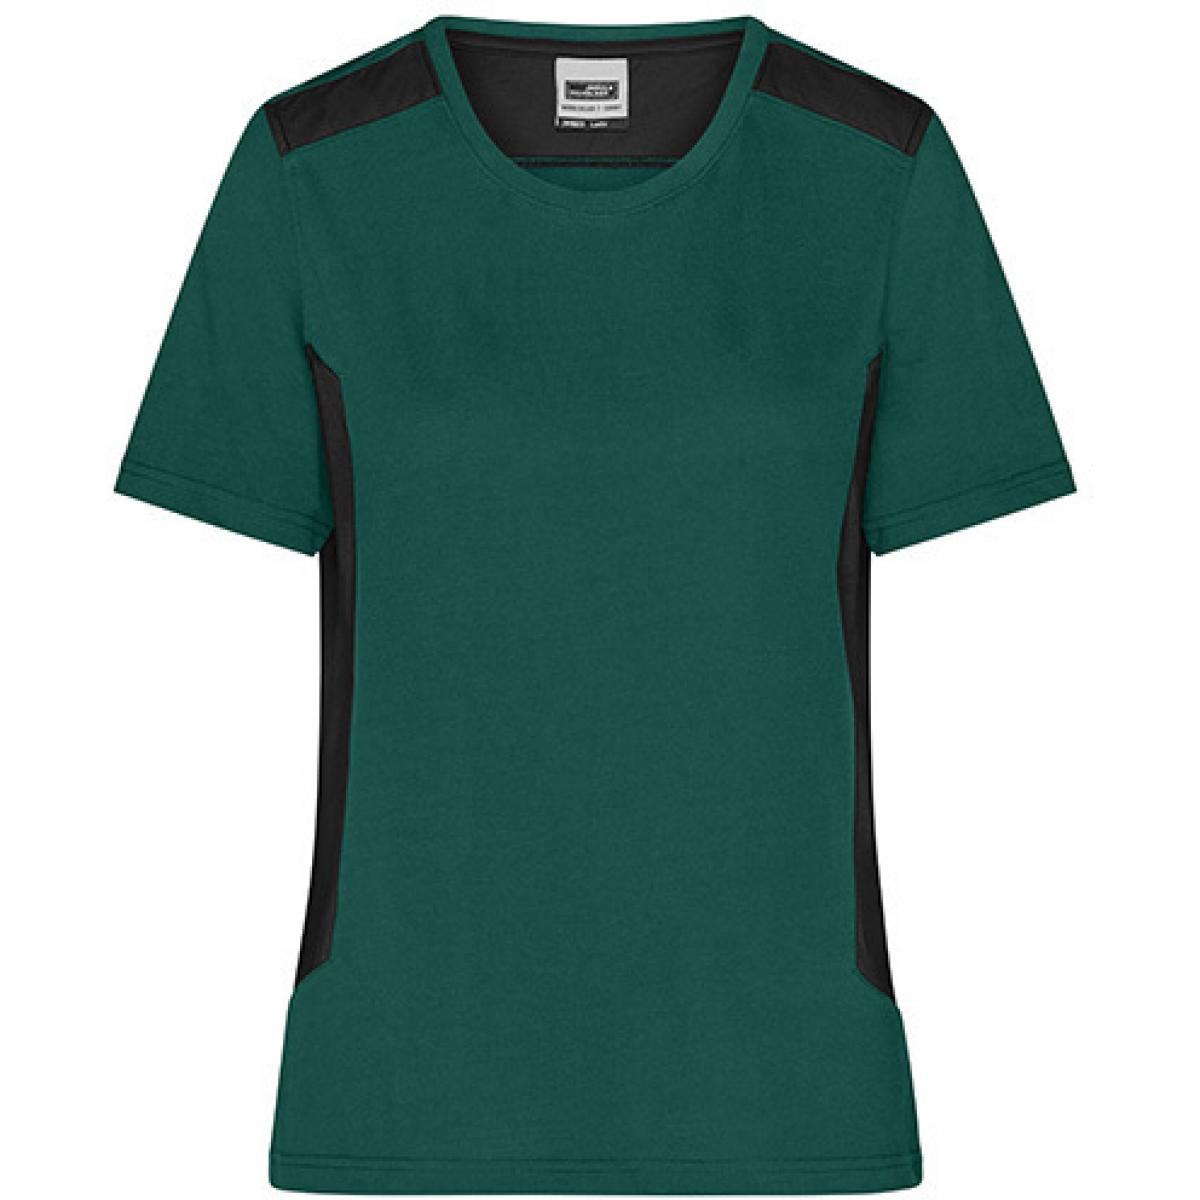 Hersteller: James+Nicholson Herstellernummer: JN1823 Artikelbezeichnung: Damen T, Ladies‘ Workwear T-Shirt -STRONG- Waschbar bis 60 ° Farbe: Dark Green/Black